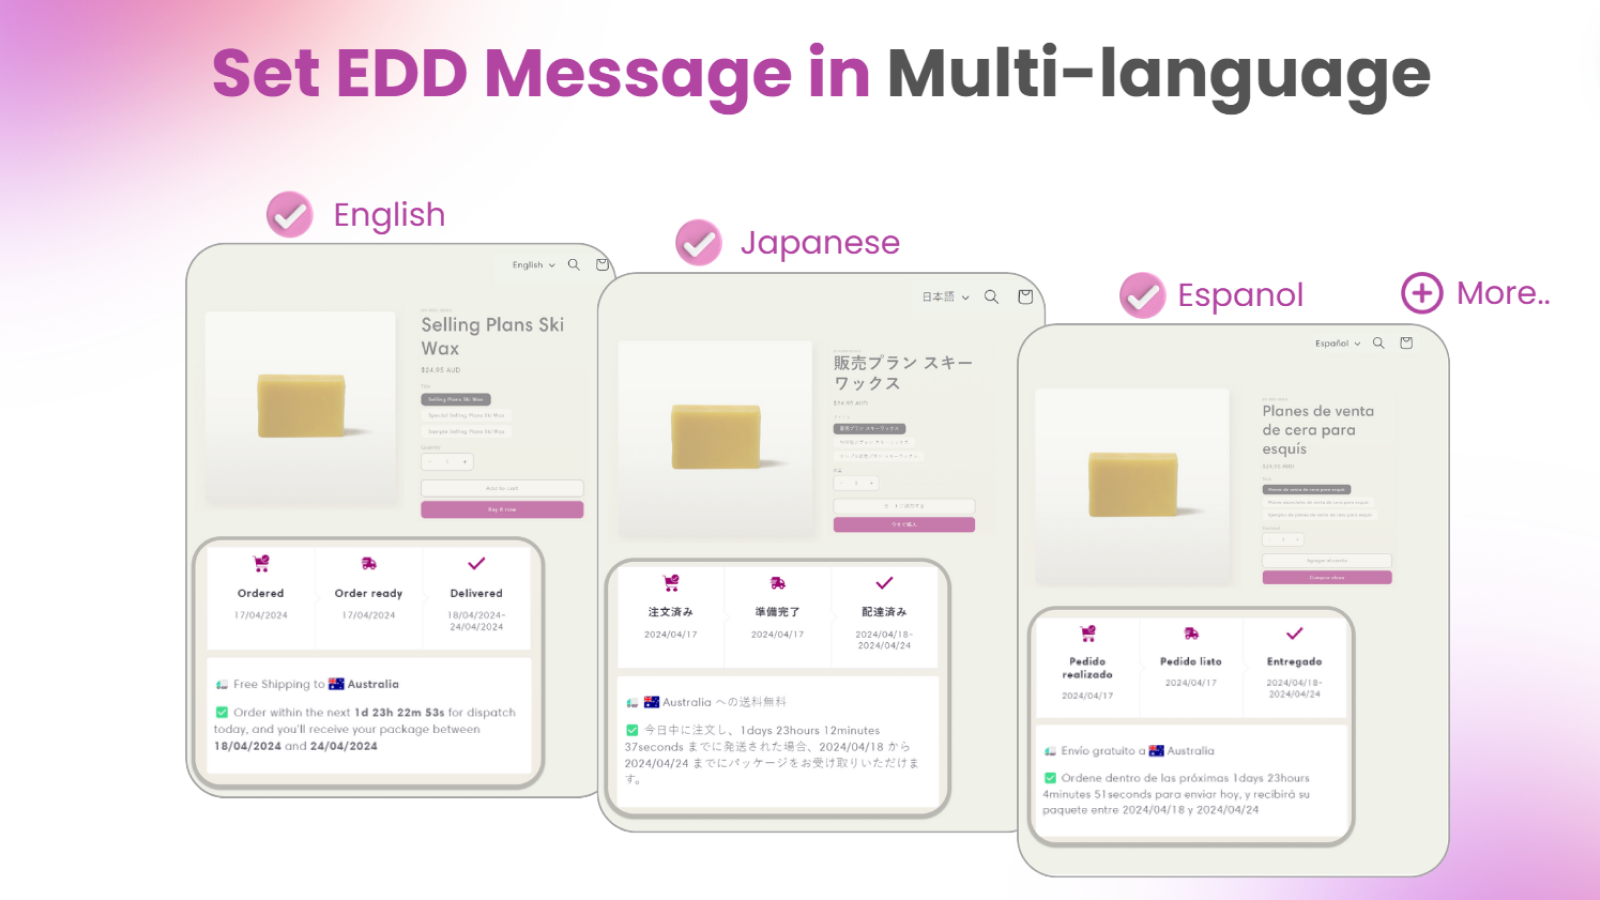 Définissez le message EDD dans plusieurs langues